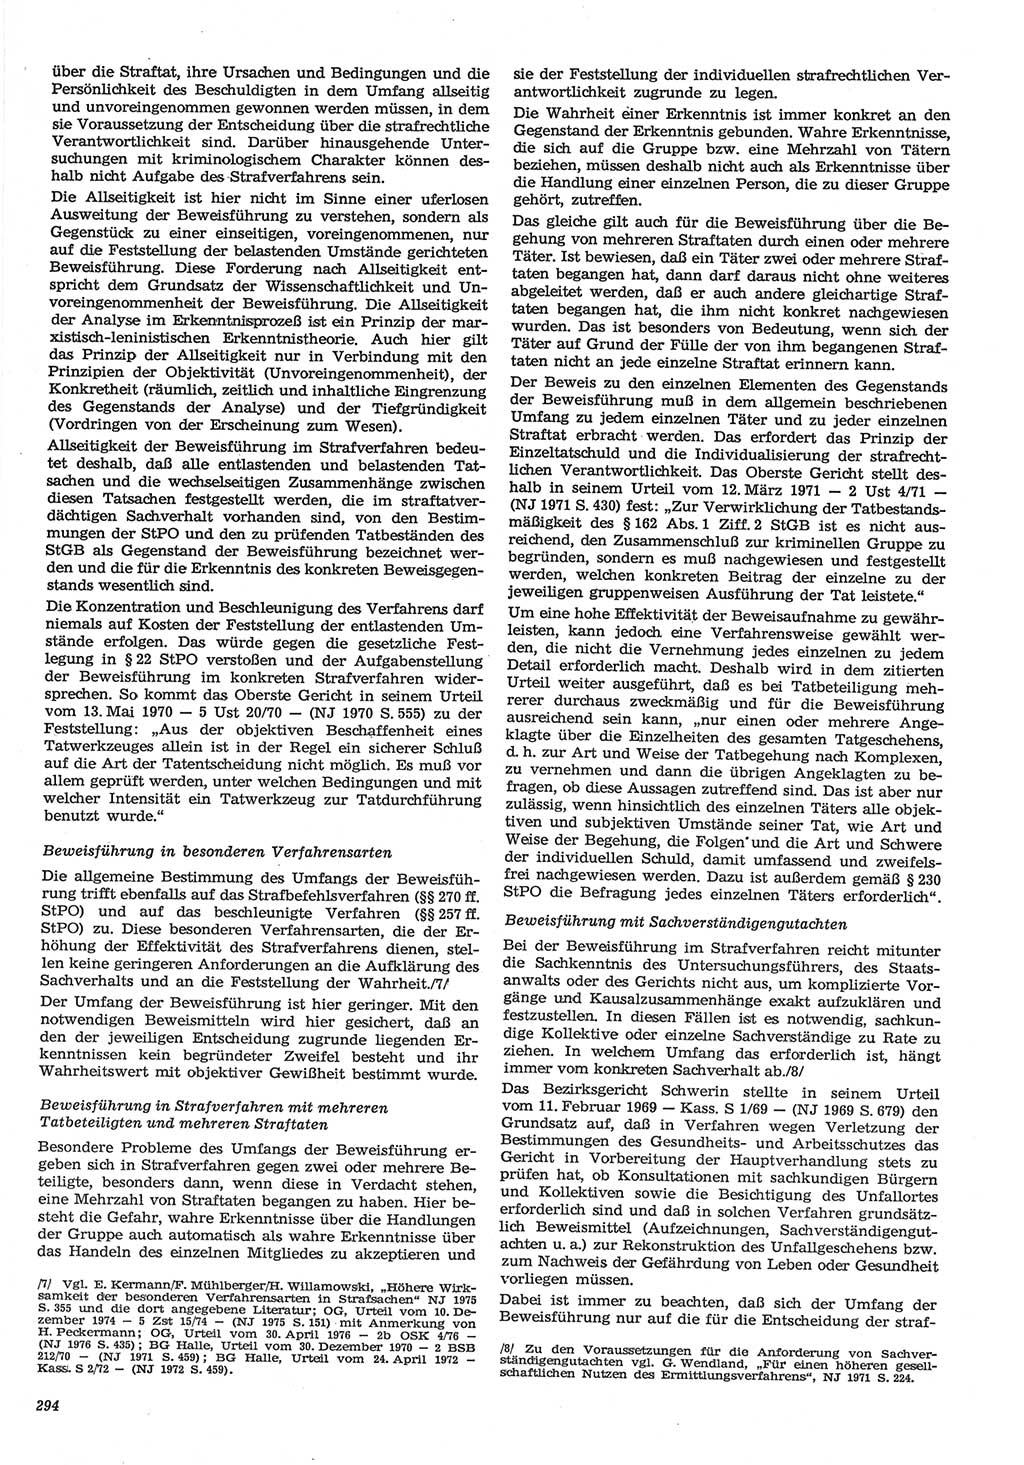 Neue Justiz (NJ), Zeitschrift für Recht und Rechtswissenschaft-Zeitschrift, sozialistisches Recht und Gesetzlichkeit, 31. Jahrgang 1977, Seite 294 (NJ DDR 1977, S. 294)